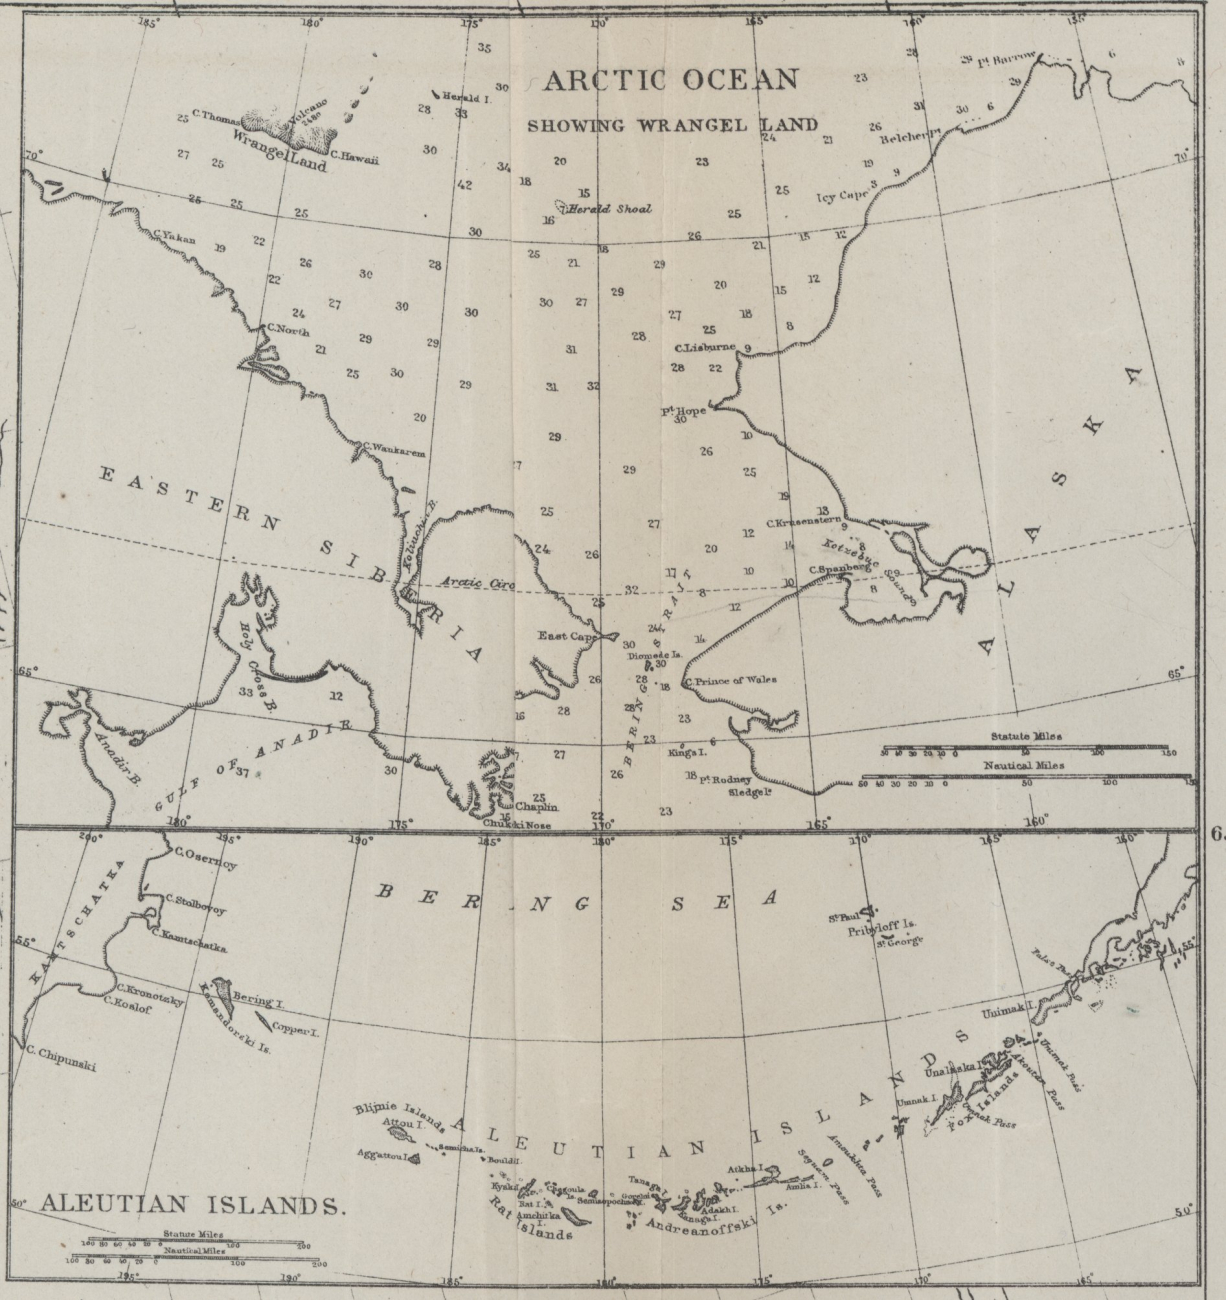 Arctic Ocean showing Wrangel Land